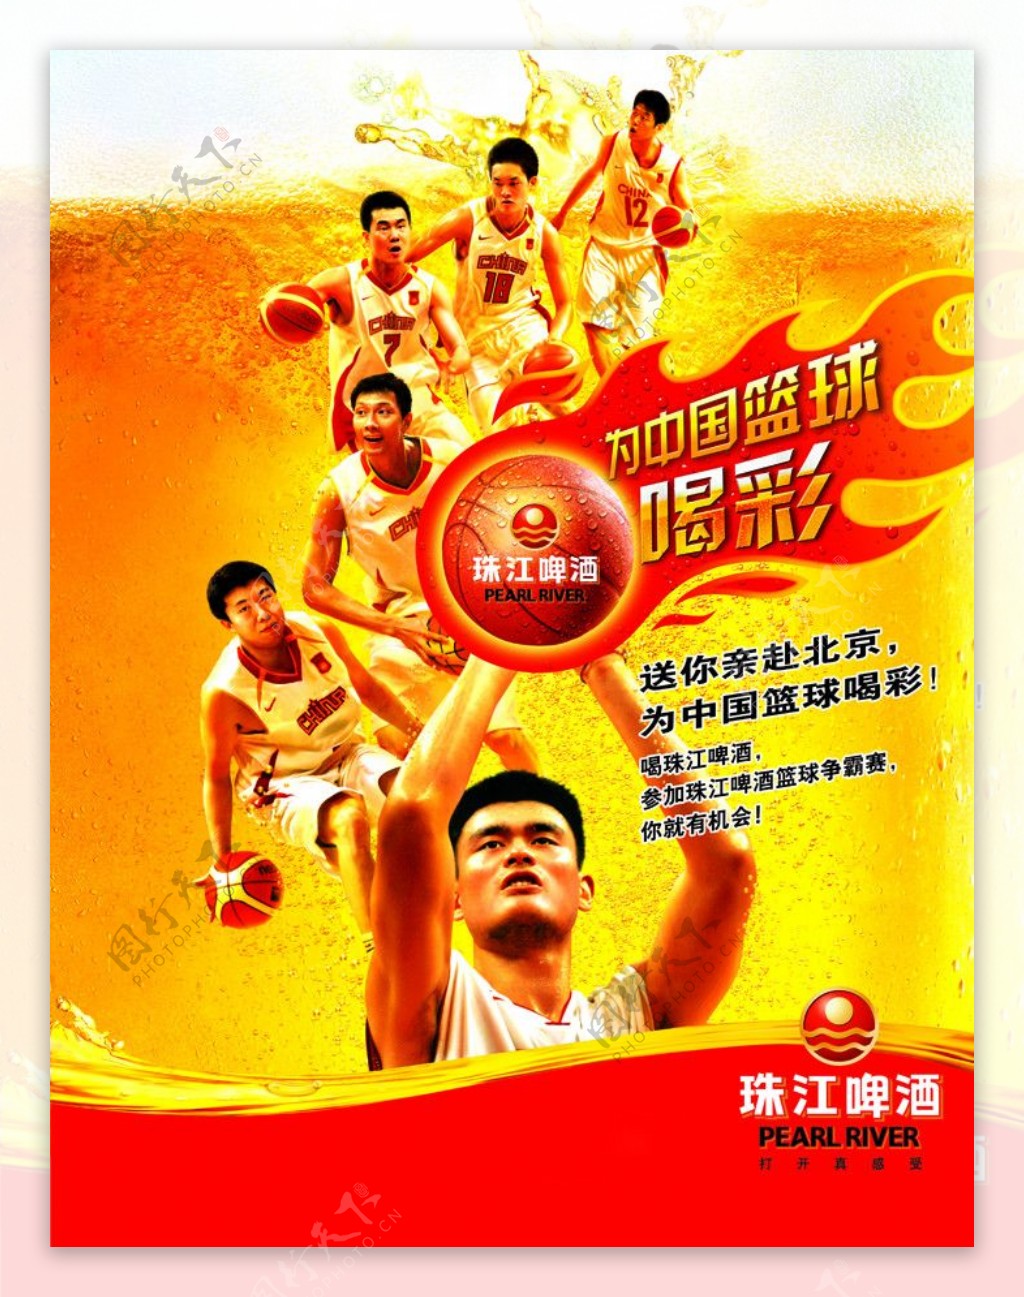 为中国篮球喝彩图片